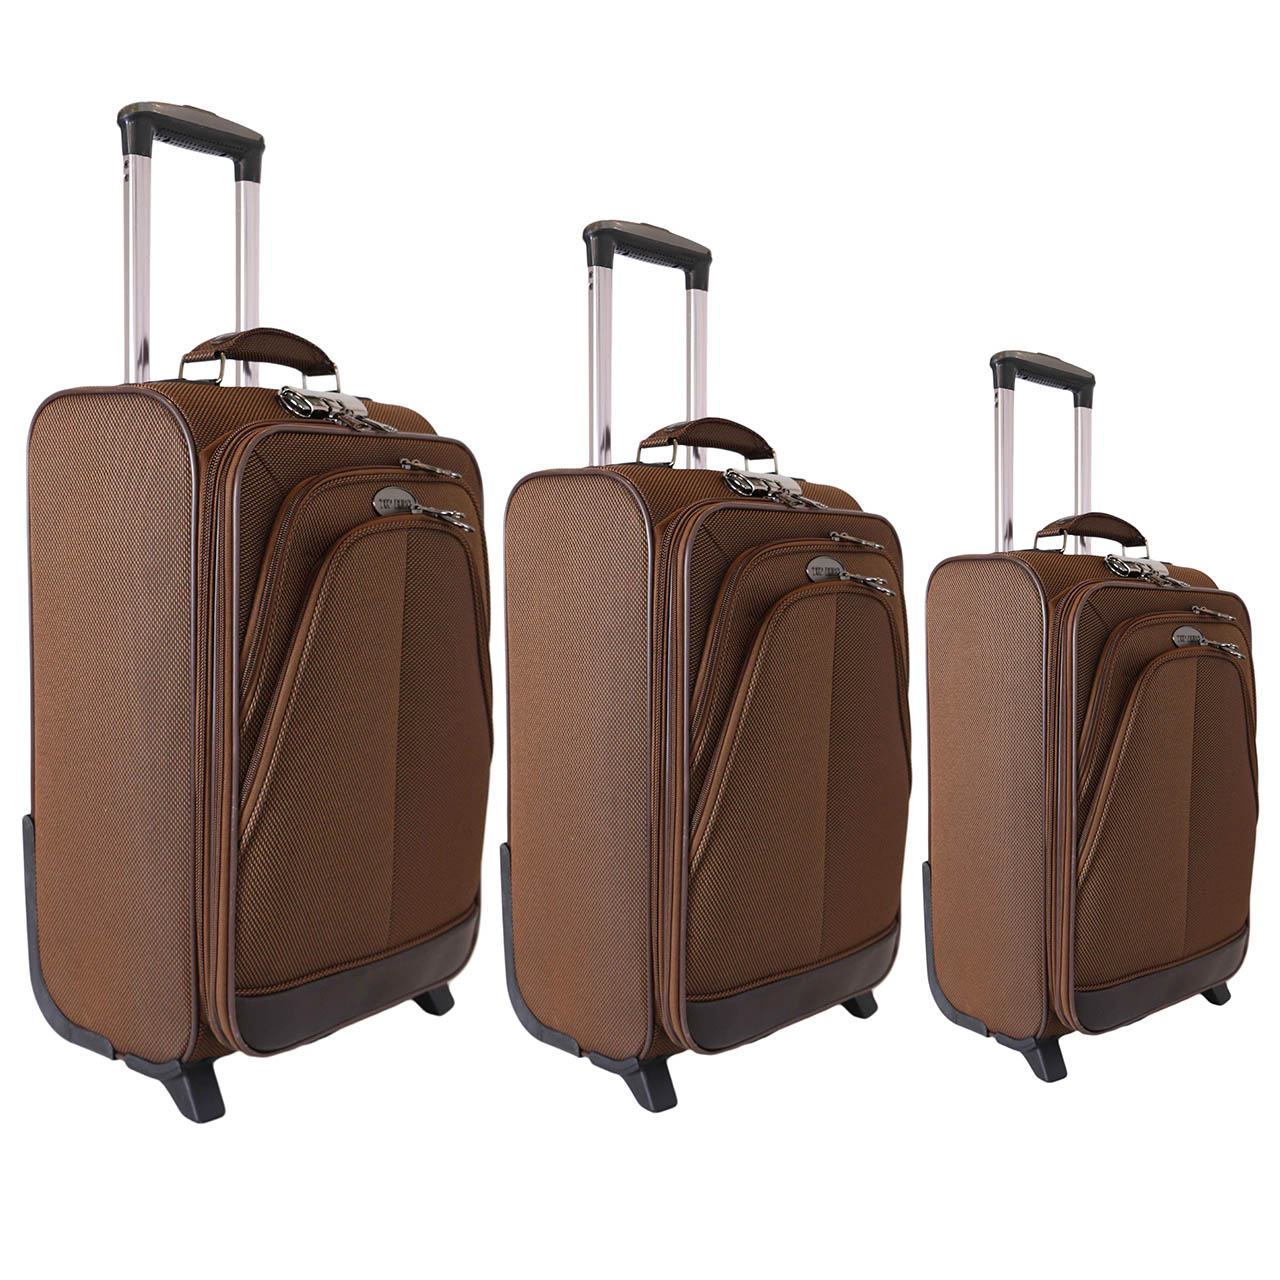 مجموعه سه عددی چمدان تاپ یورو مدل 6